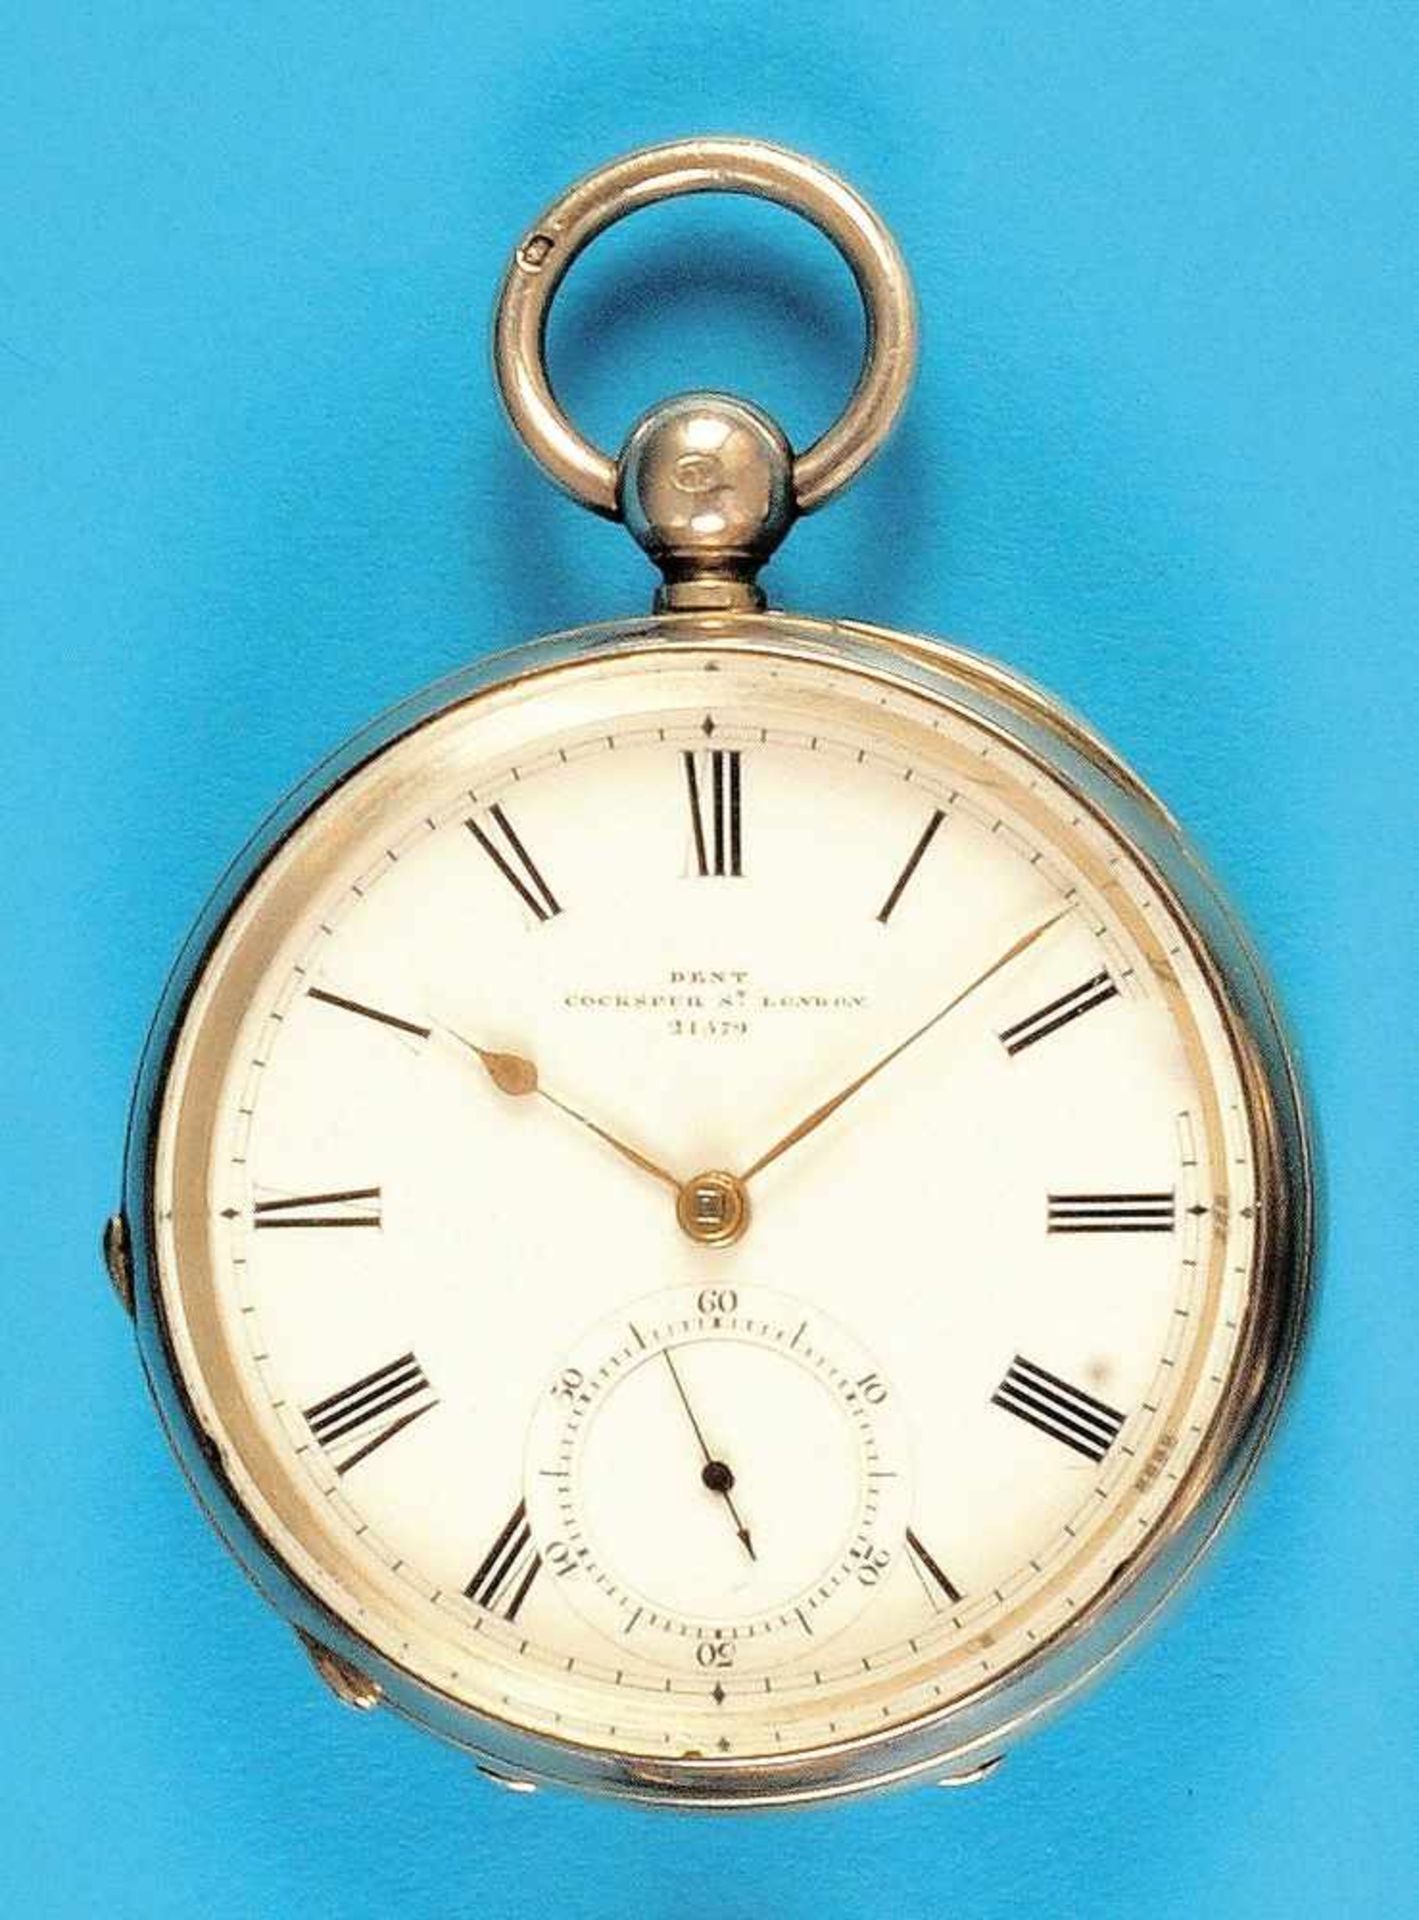 Silver pocket watch with chronometer escapement, Dent LondonSilbertaschenuhr mit Chronometerhemmung, - Bild 2 aus 2